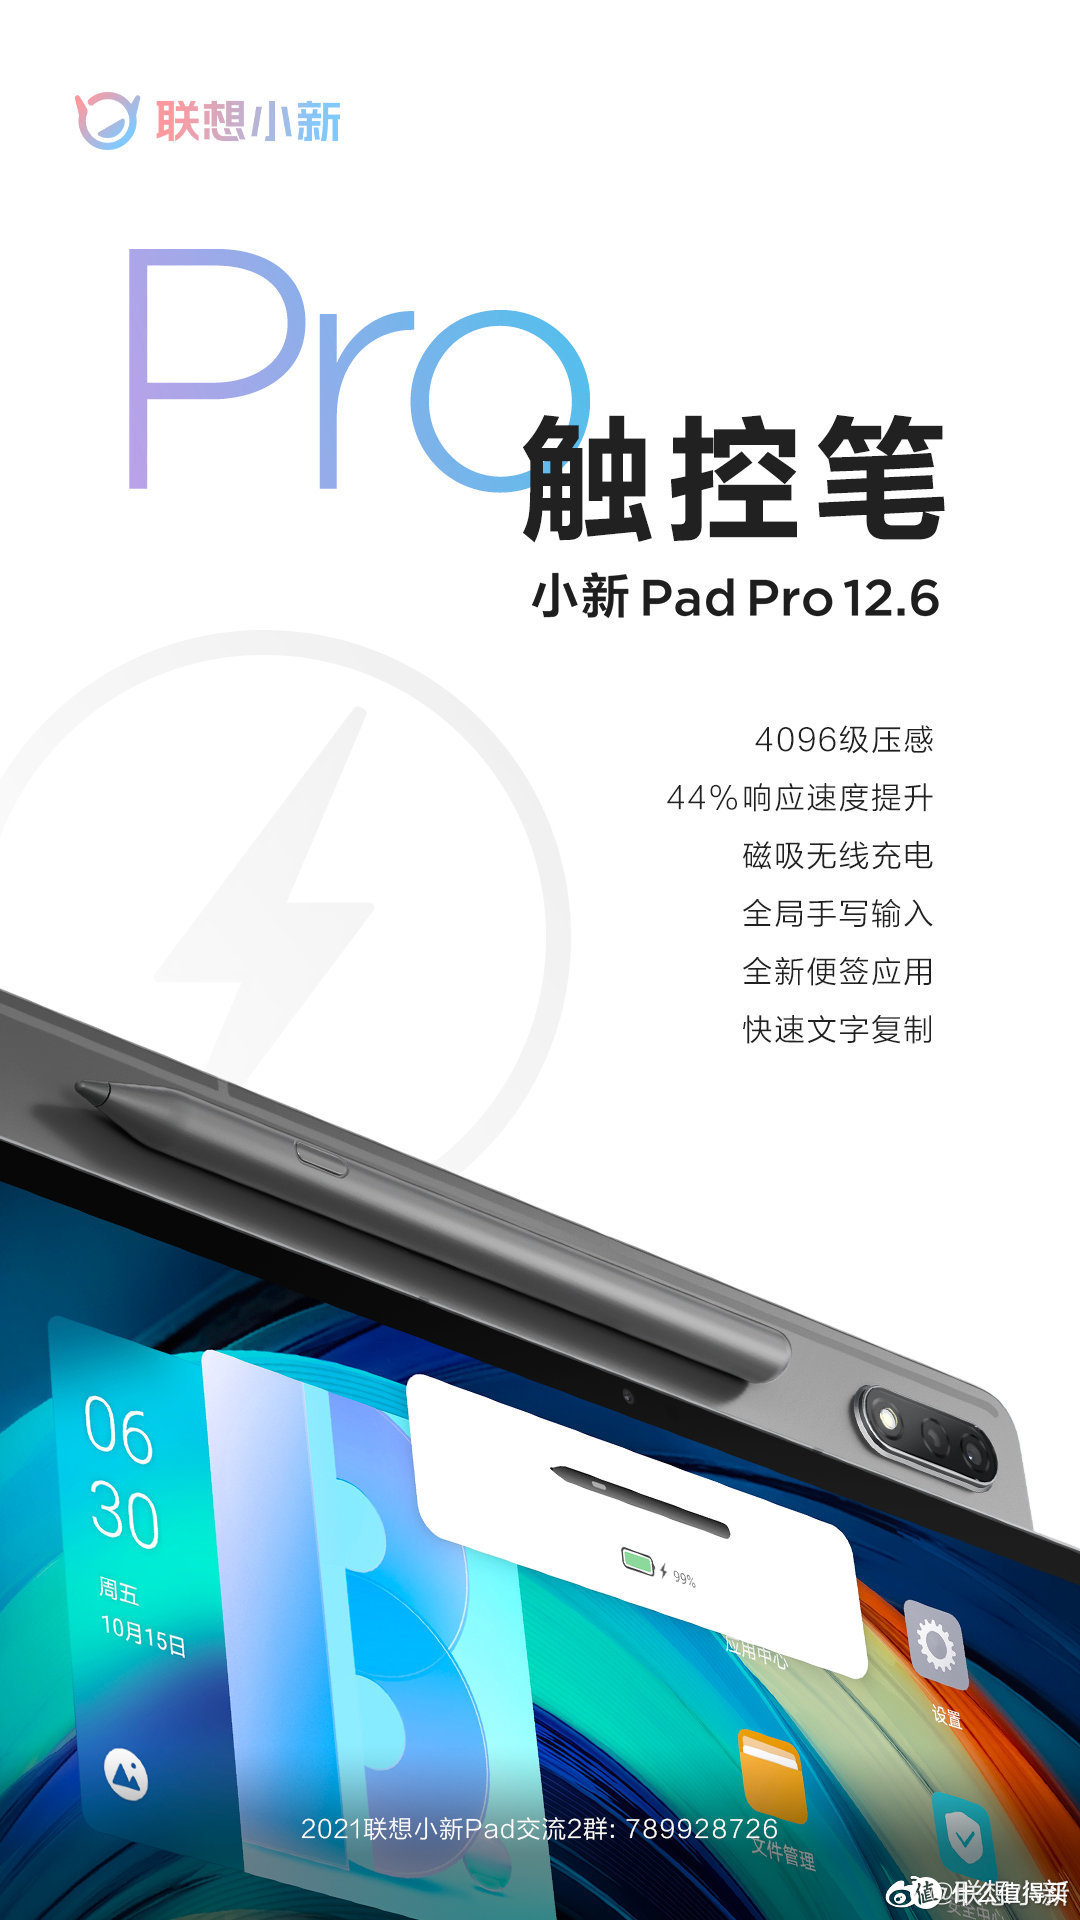 小新发布第二代小新 Pad Pro 12.6 触控笔，4096级压感、提升44%响应